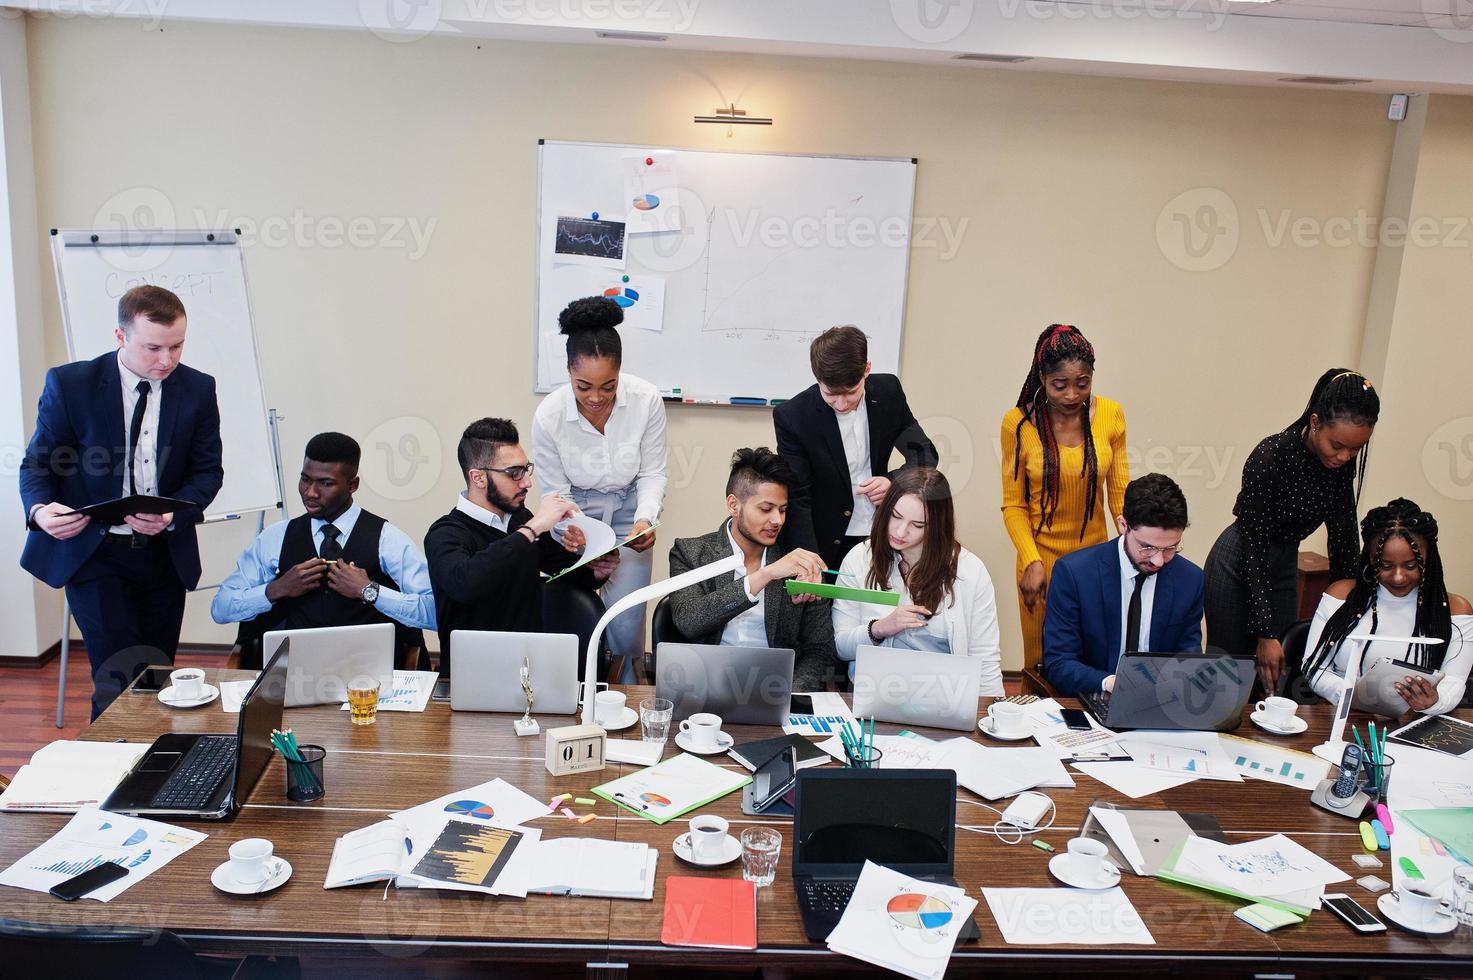 jóvenes creativos multirraciales en la oficina moderna. grupo de jóvenes empresarios están trabajando juntos con laptop, tablet. exitoso equipo de freelancers en coworking. foto